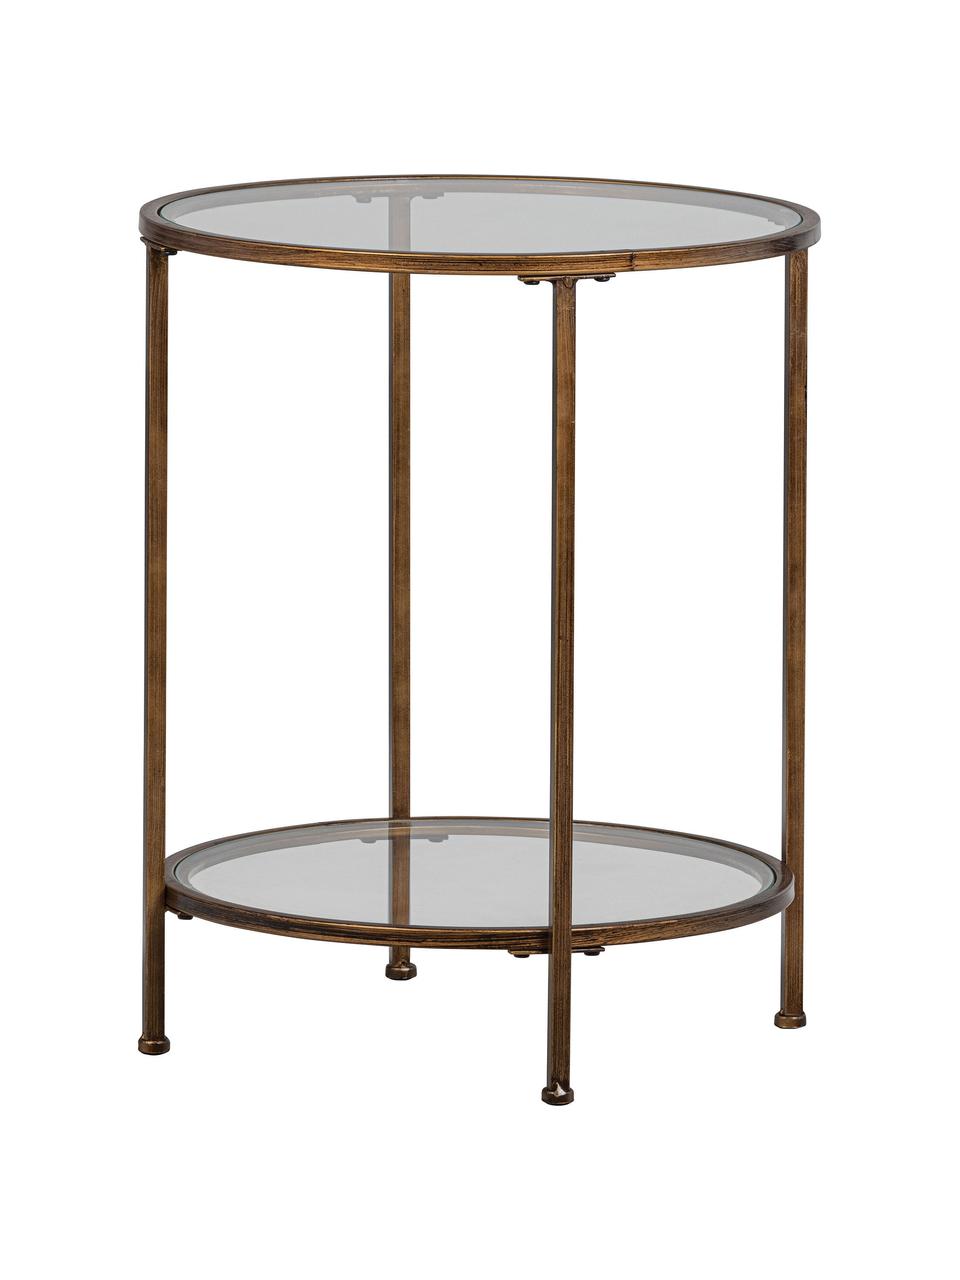 Skleněný odkládací stolek s povrchovu úpravou Goddess, Rám: mosazná, s povrchovou úpravou Základna a deska stolu: transparentní, Ø 46 cm, V 61 cm